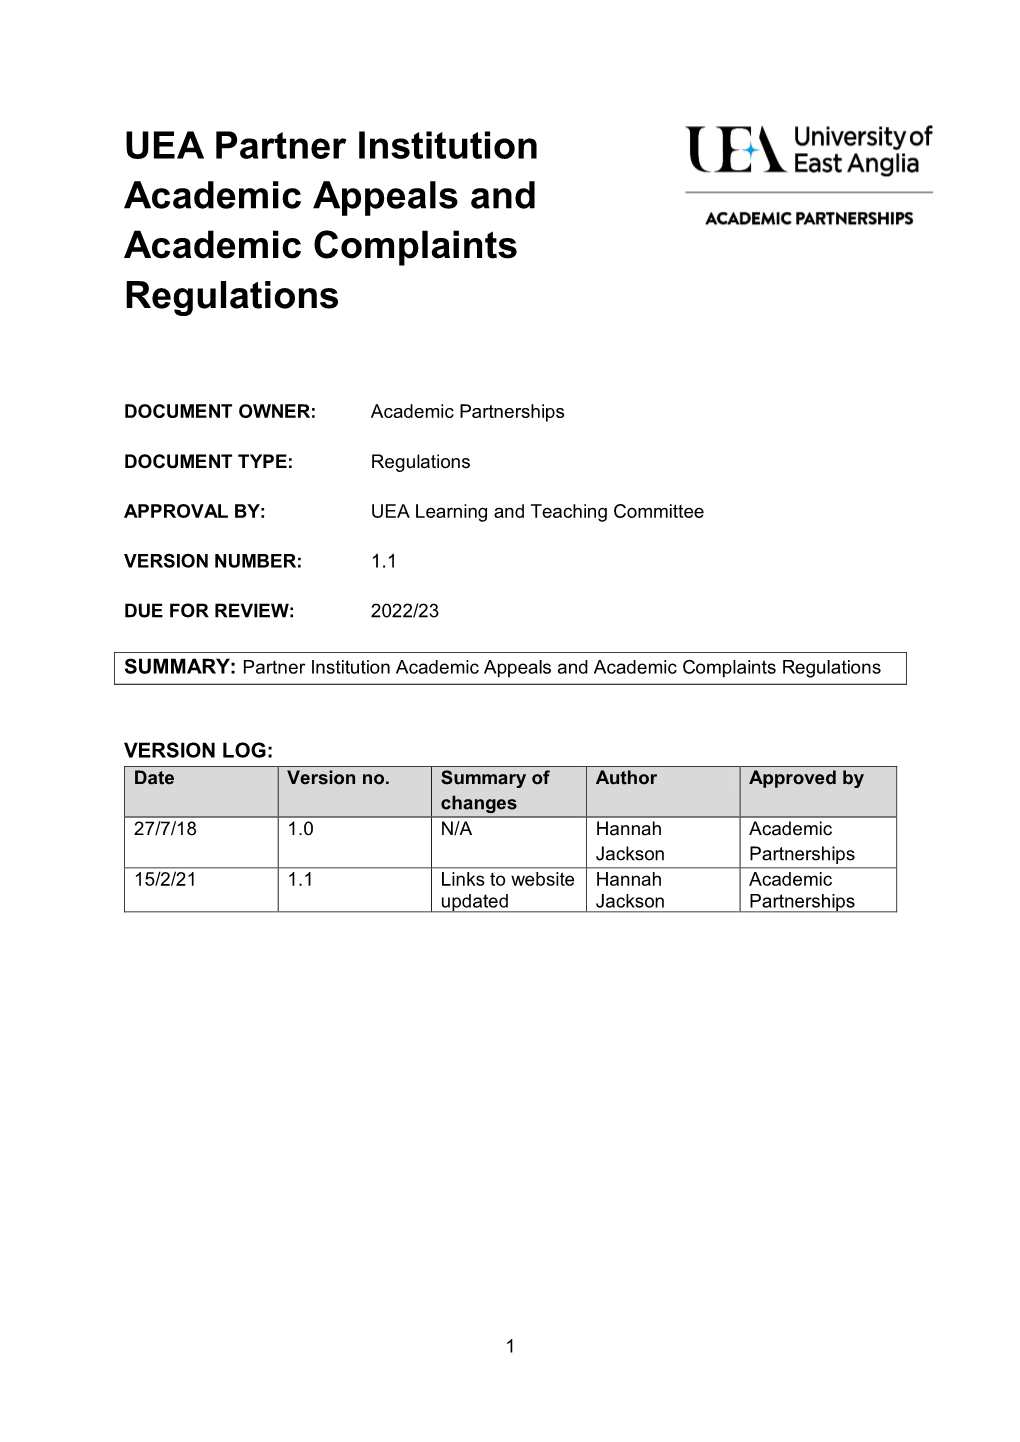 Academic Appeals and Complaints Regulations Comprises Three Parts